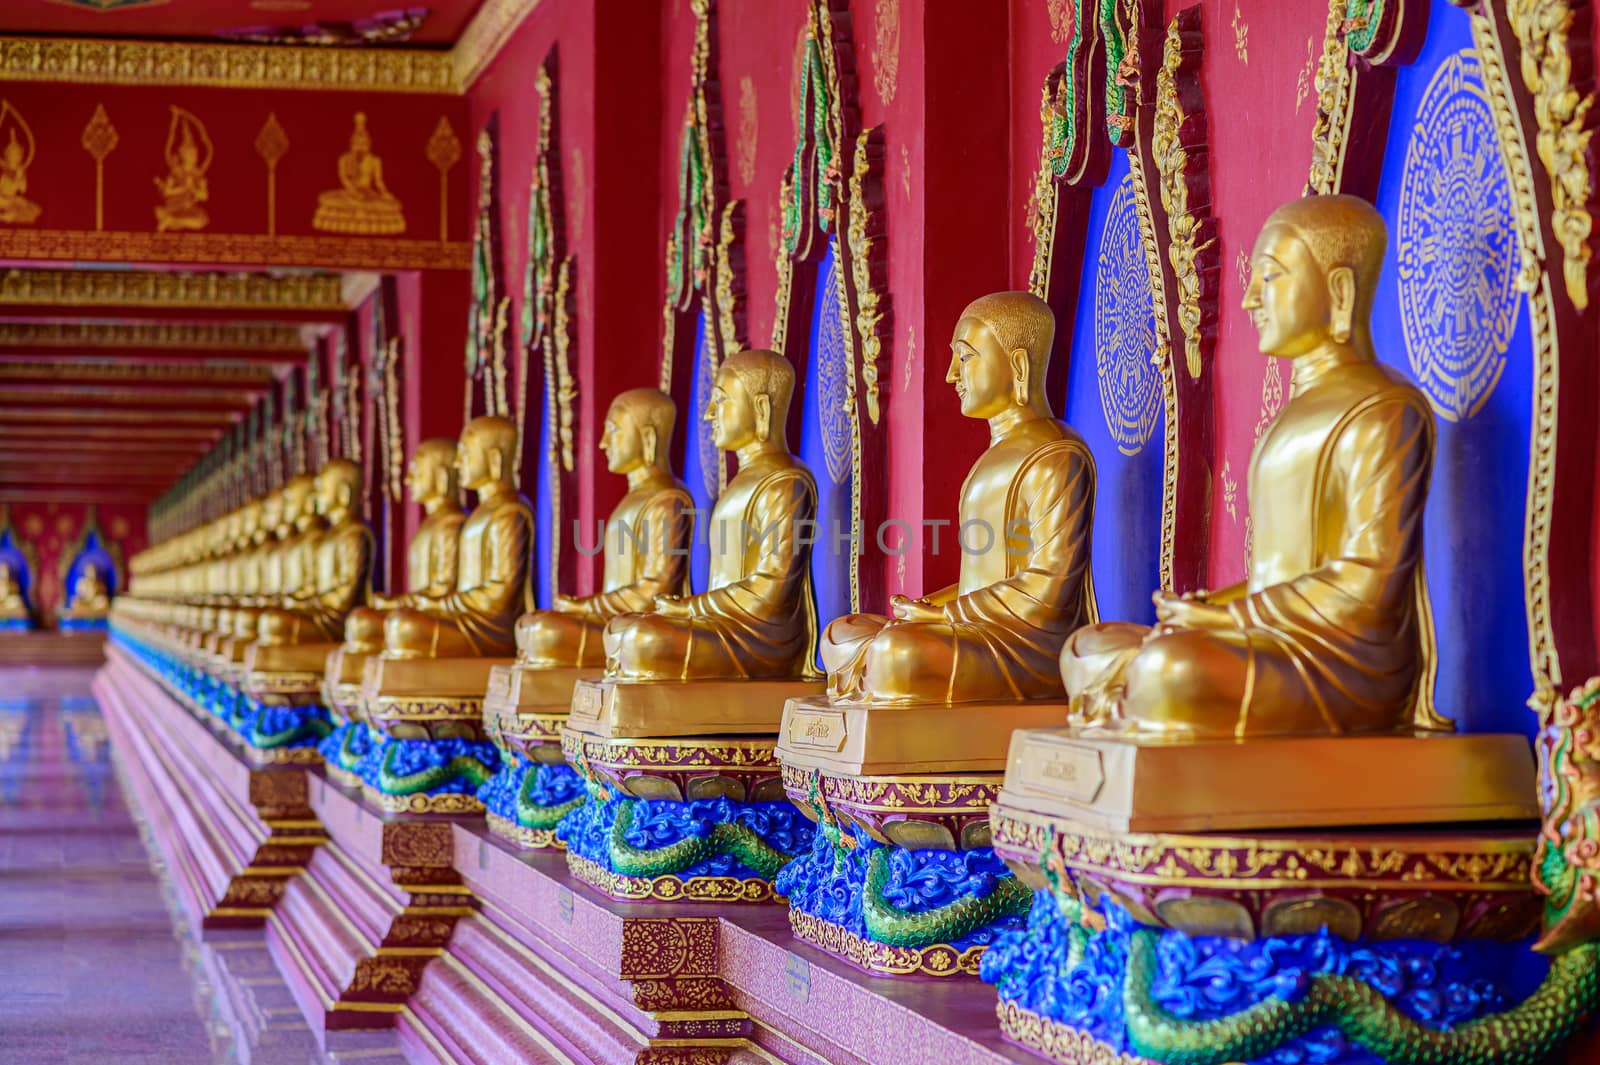 Buddha Wat Mahathat Wachiramongkol Wat Bang Thong In Krabi Province Thailand May 19, 2019